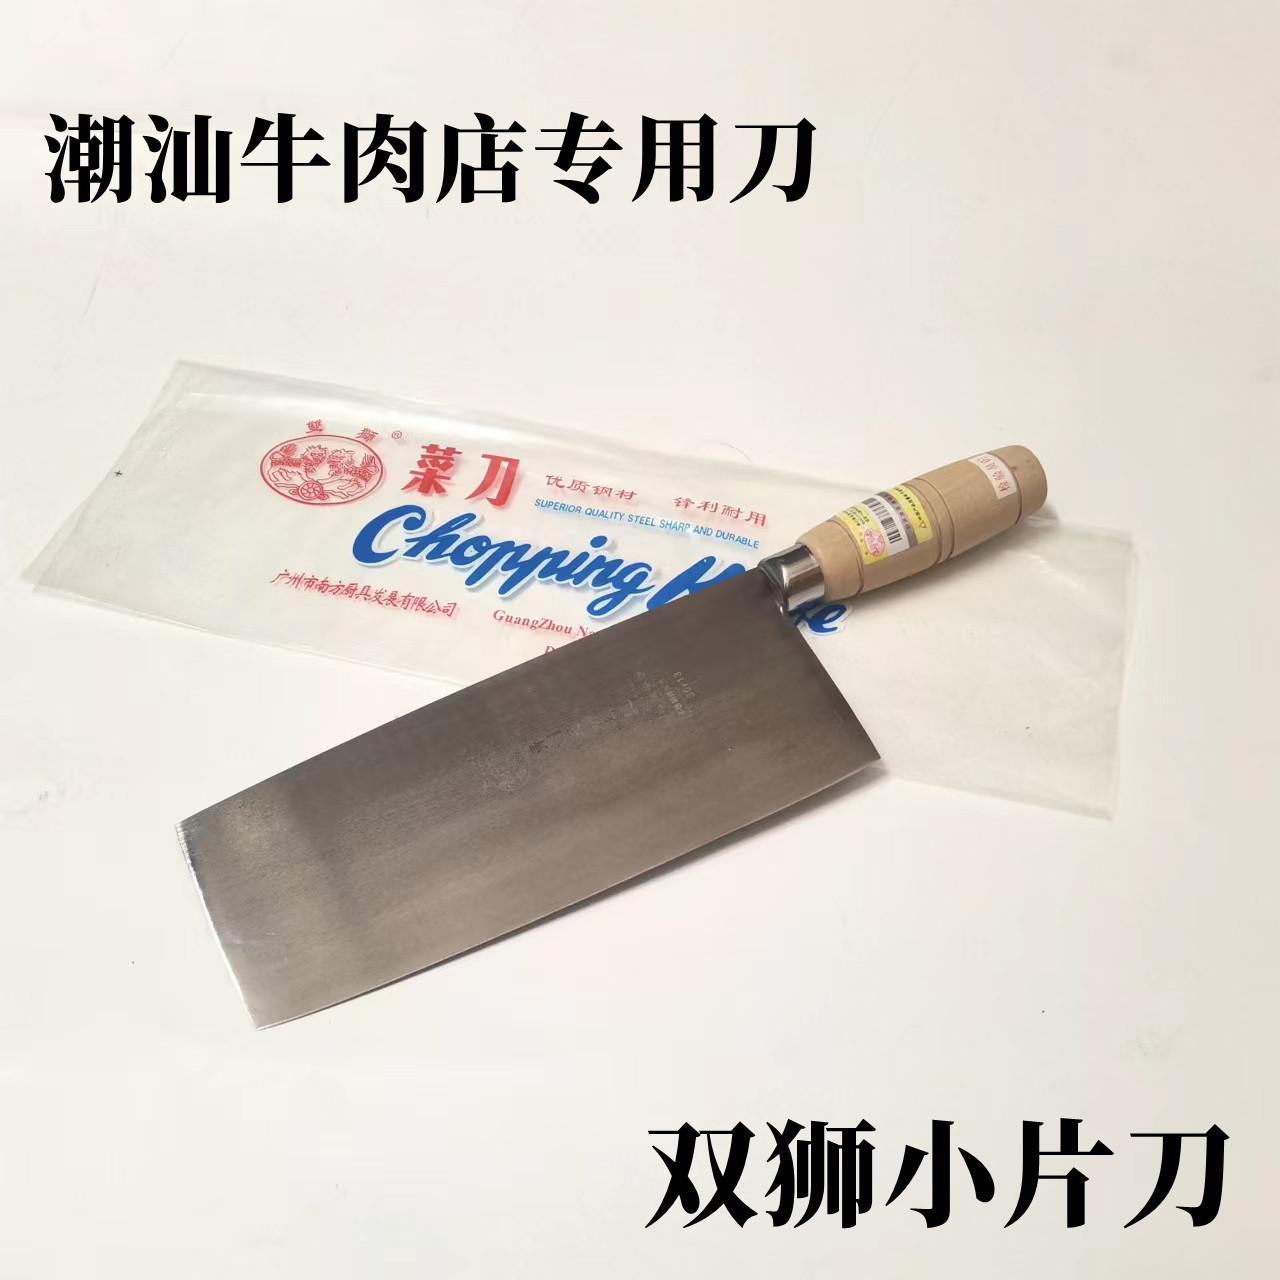 广州双狮不锈钢木柄小片刀 潮汕牛肉店片刀商用 切片刀切丝刀菜刀